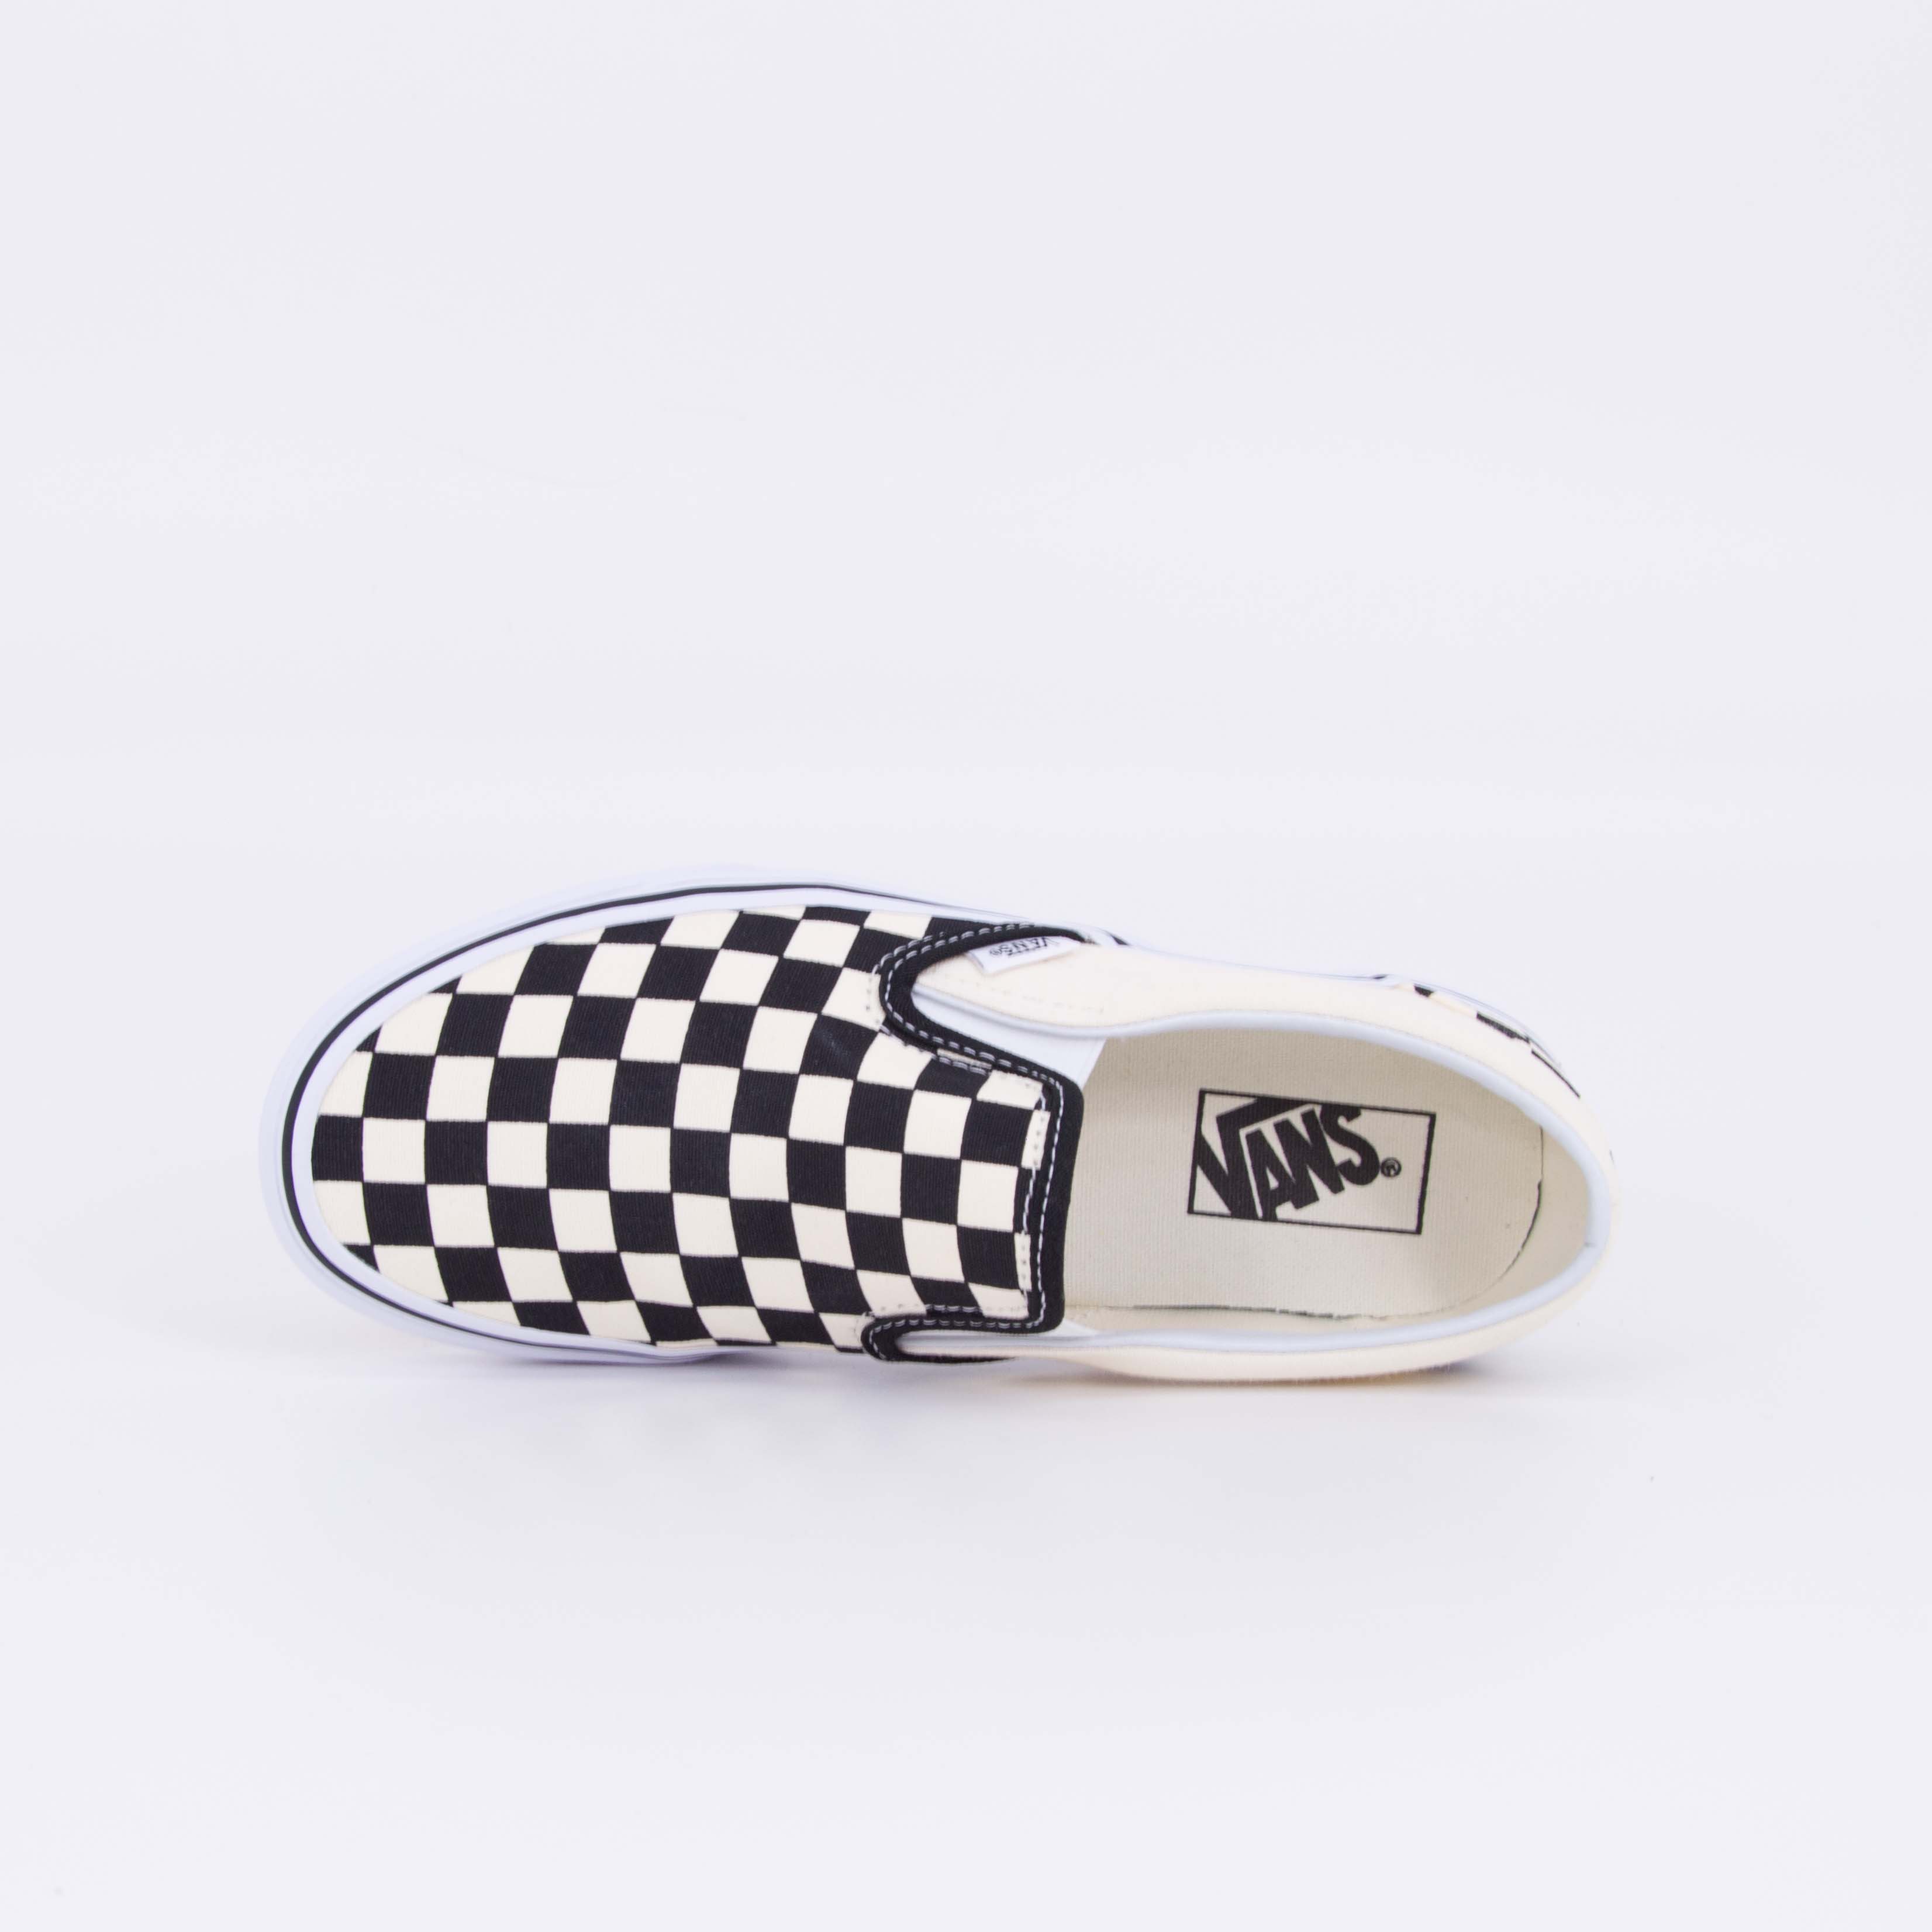 Vans - SLIP ON - Checkerboard Black/White